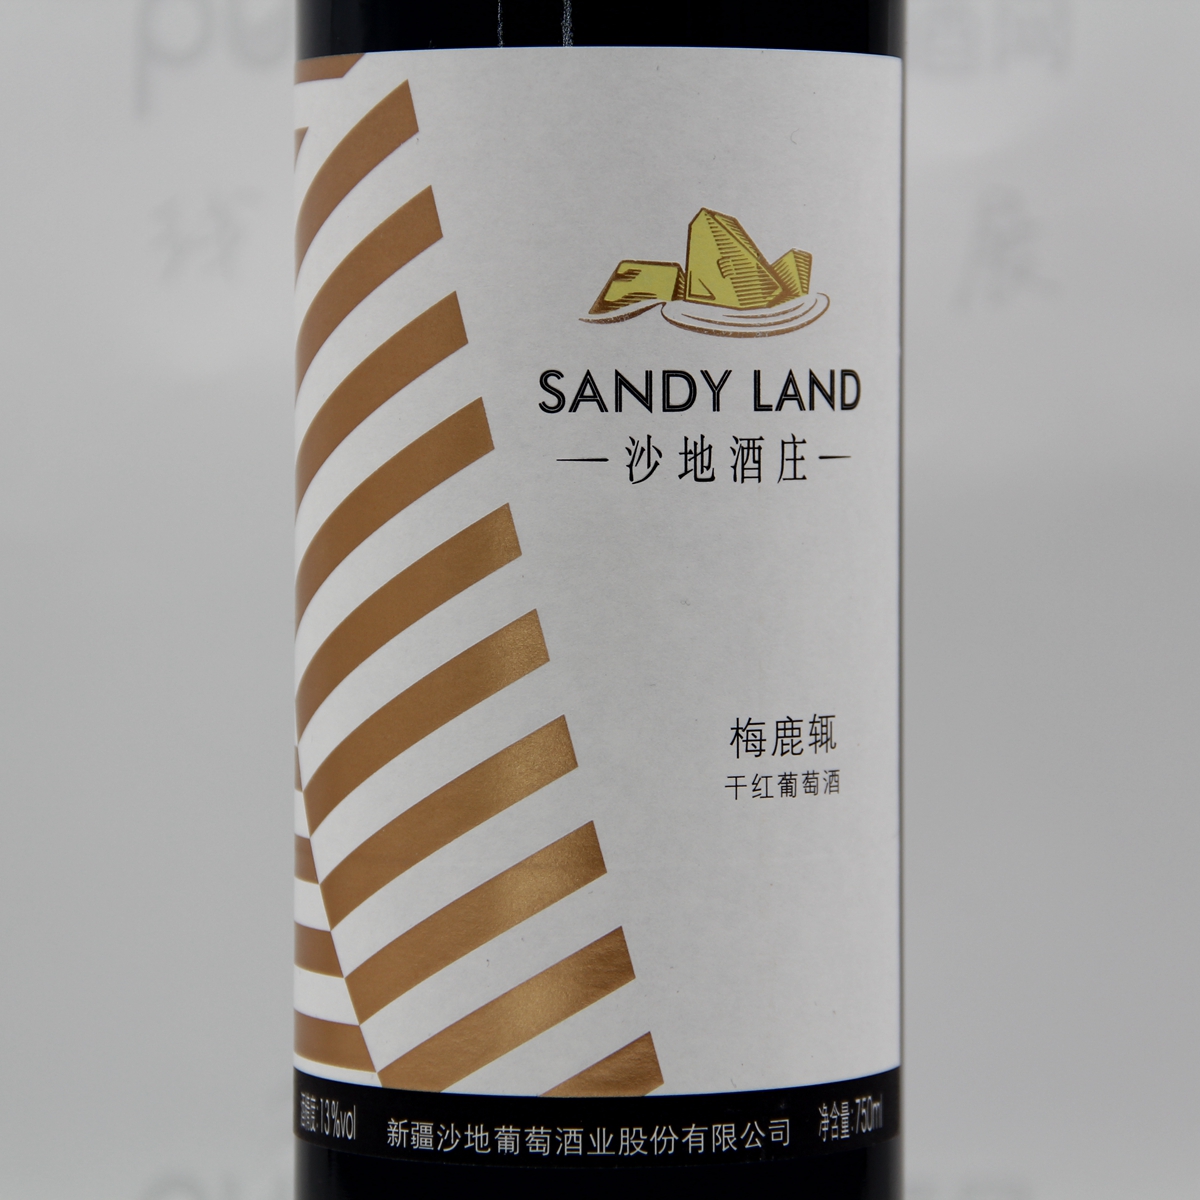 中国新疆产区沙地酒庄梅鹿辄干红葡萄酒